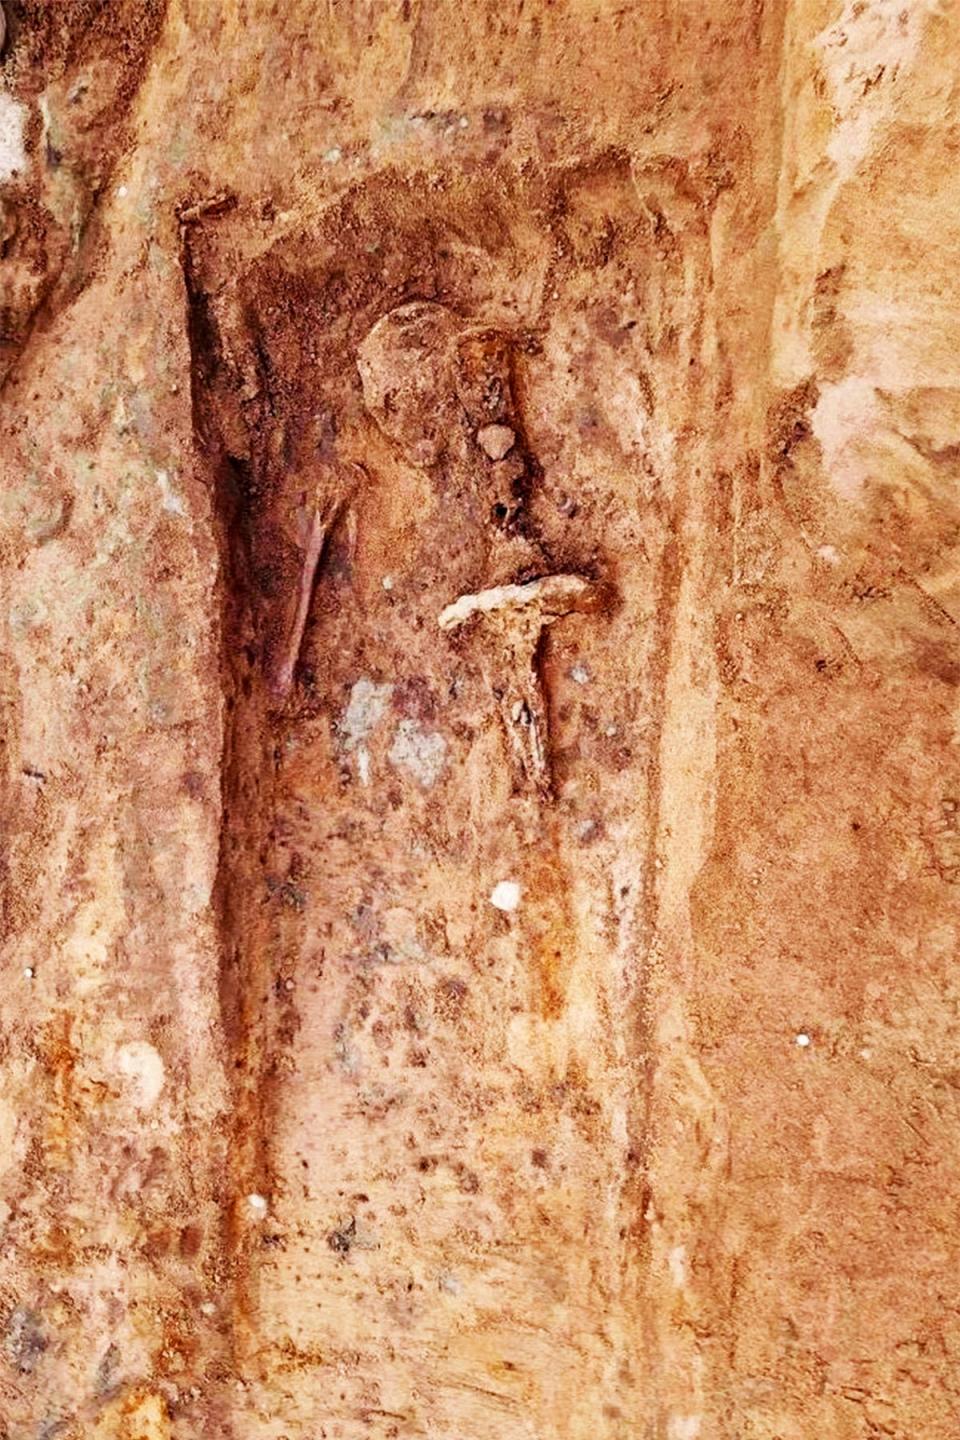 Foto de la tumba en la que se encontró la espada durante la excavación. Allí se puede observar un cráneo, la parte superior de uno de los brazos, y la espada ubicada sobre el lado izquierdo con su respectiva empuñadura. (Halland Cultural Environment)